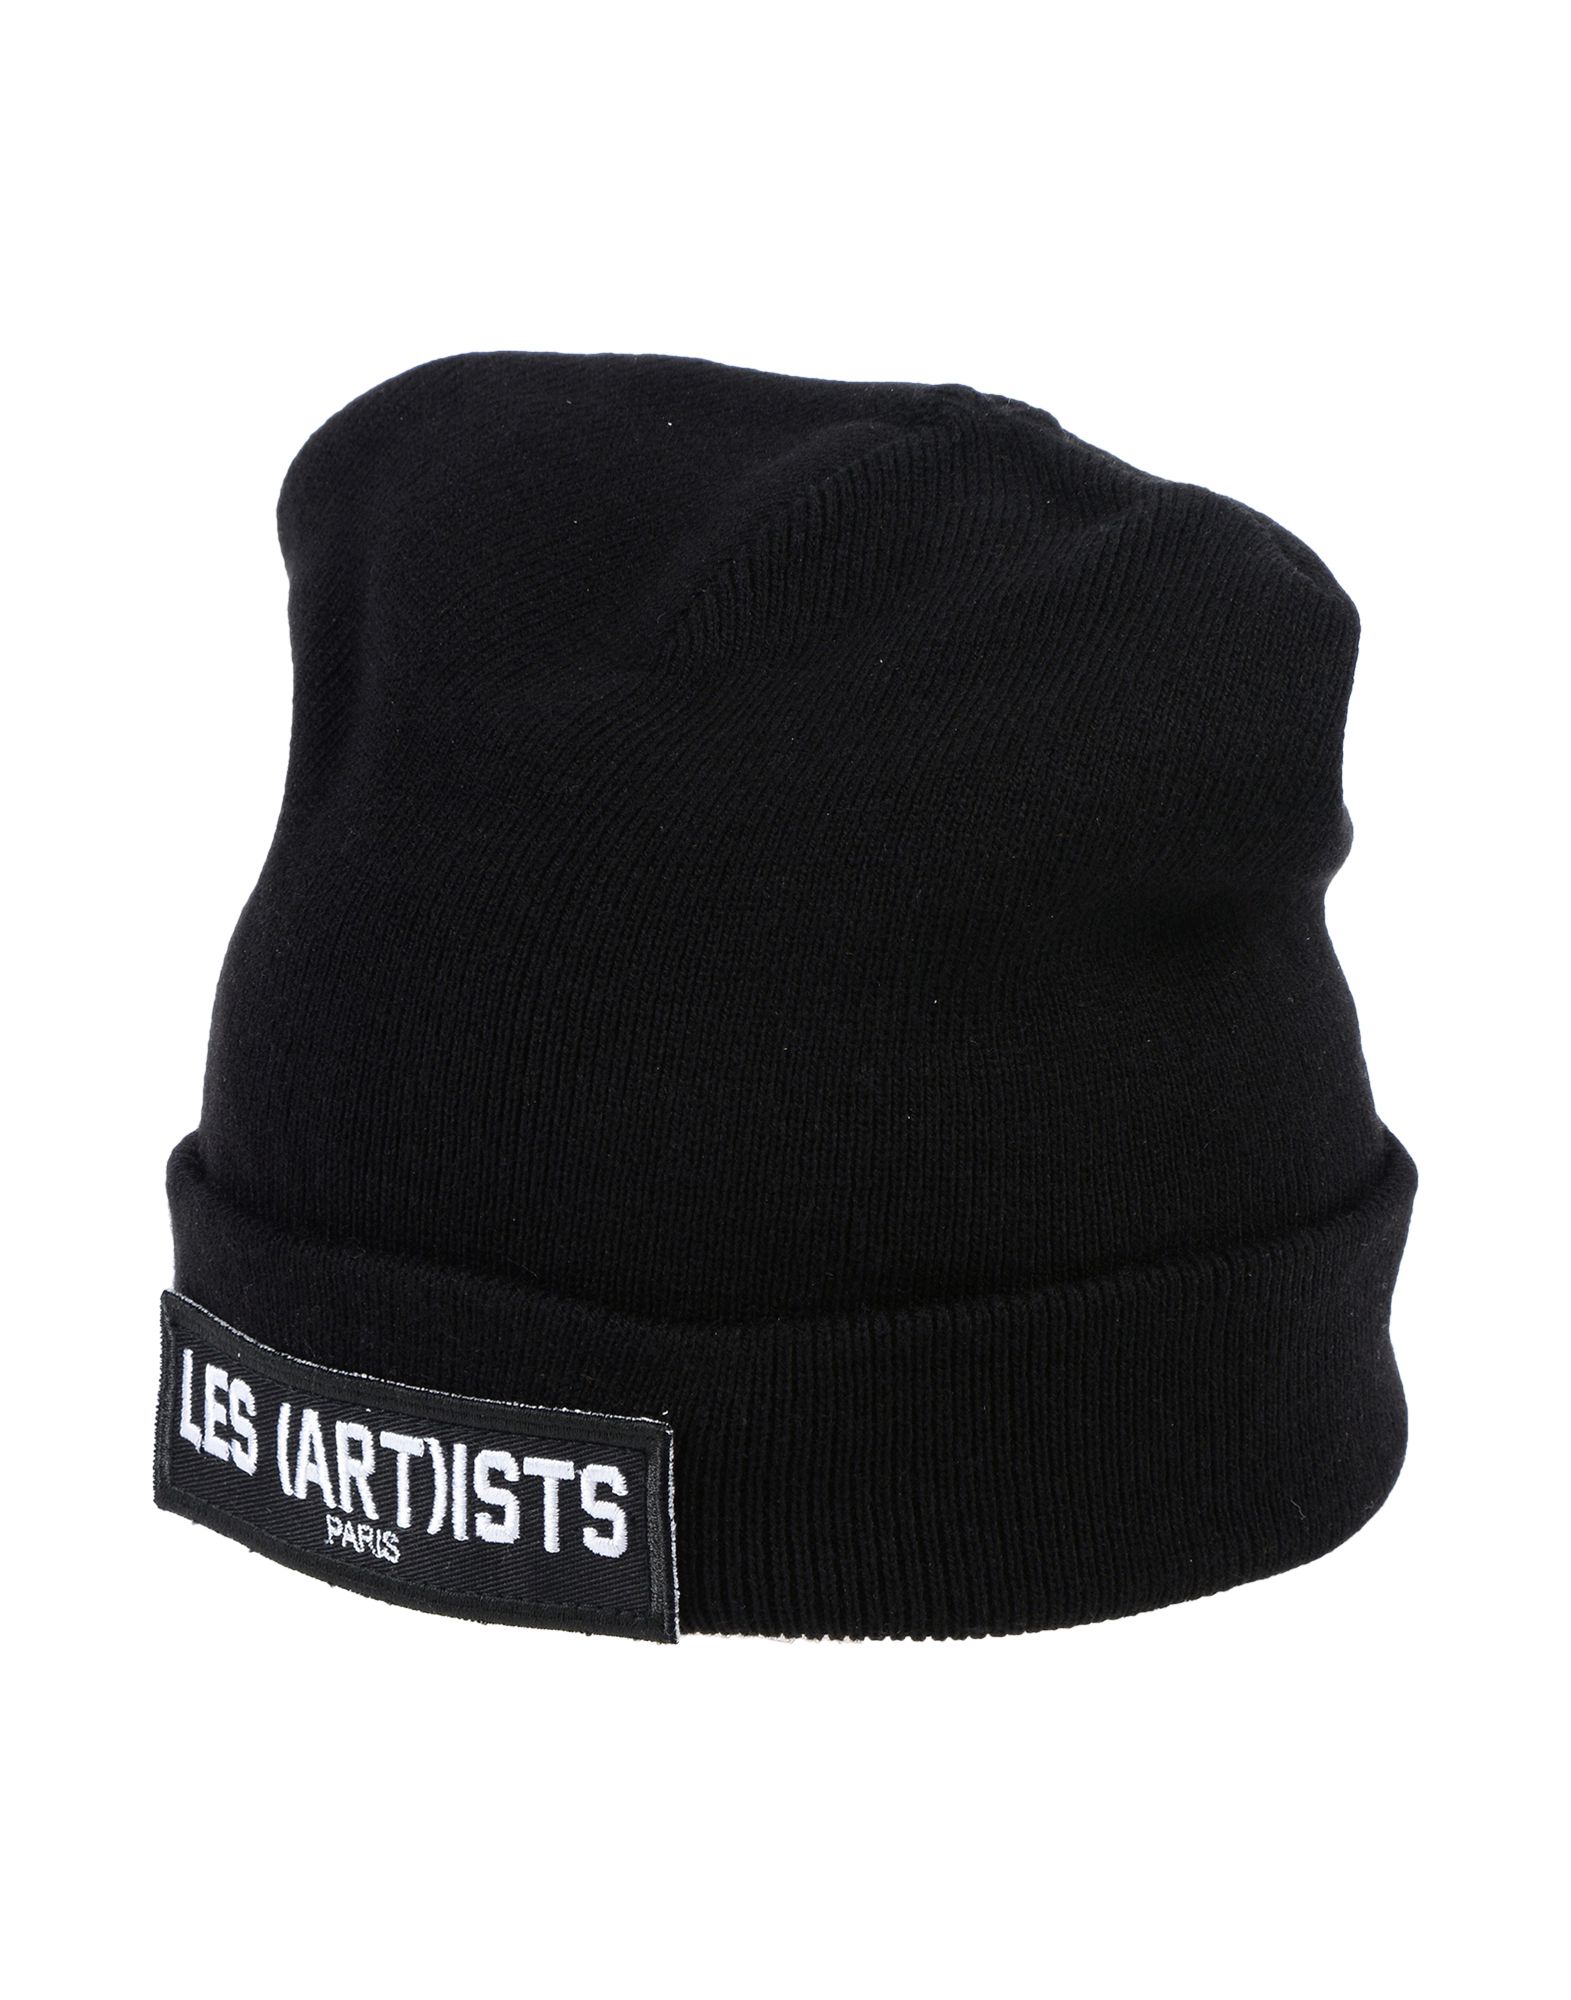 《送料無料》LES (ART)ISTS メンズ 帽子 ブラック M アクリル 100%